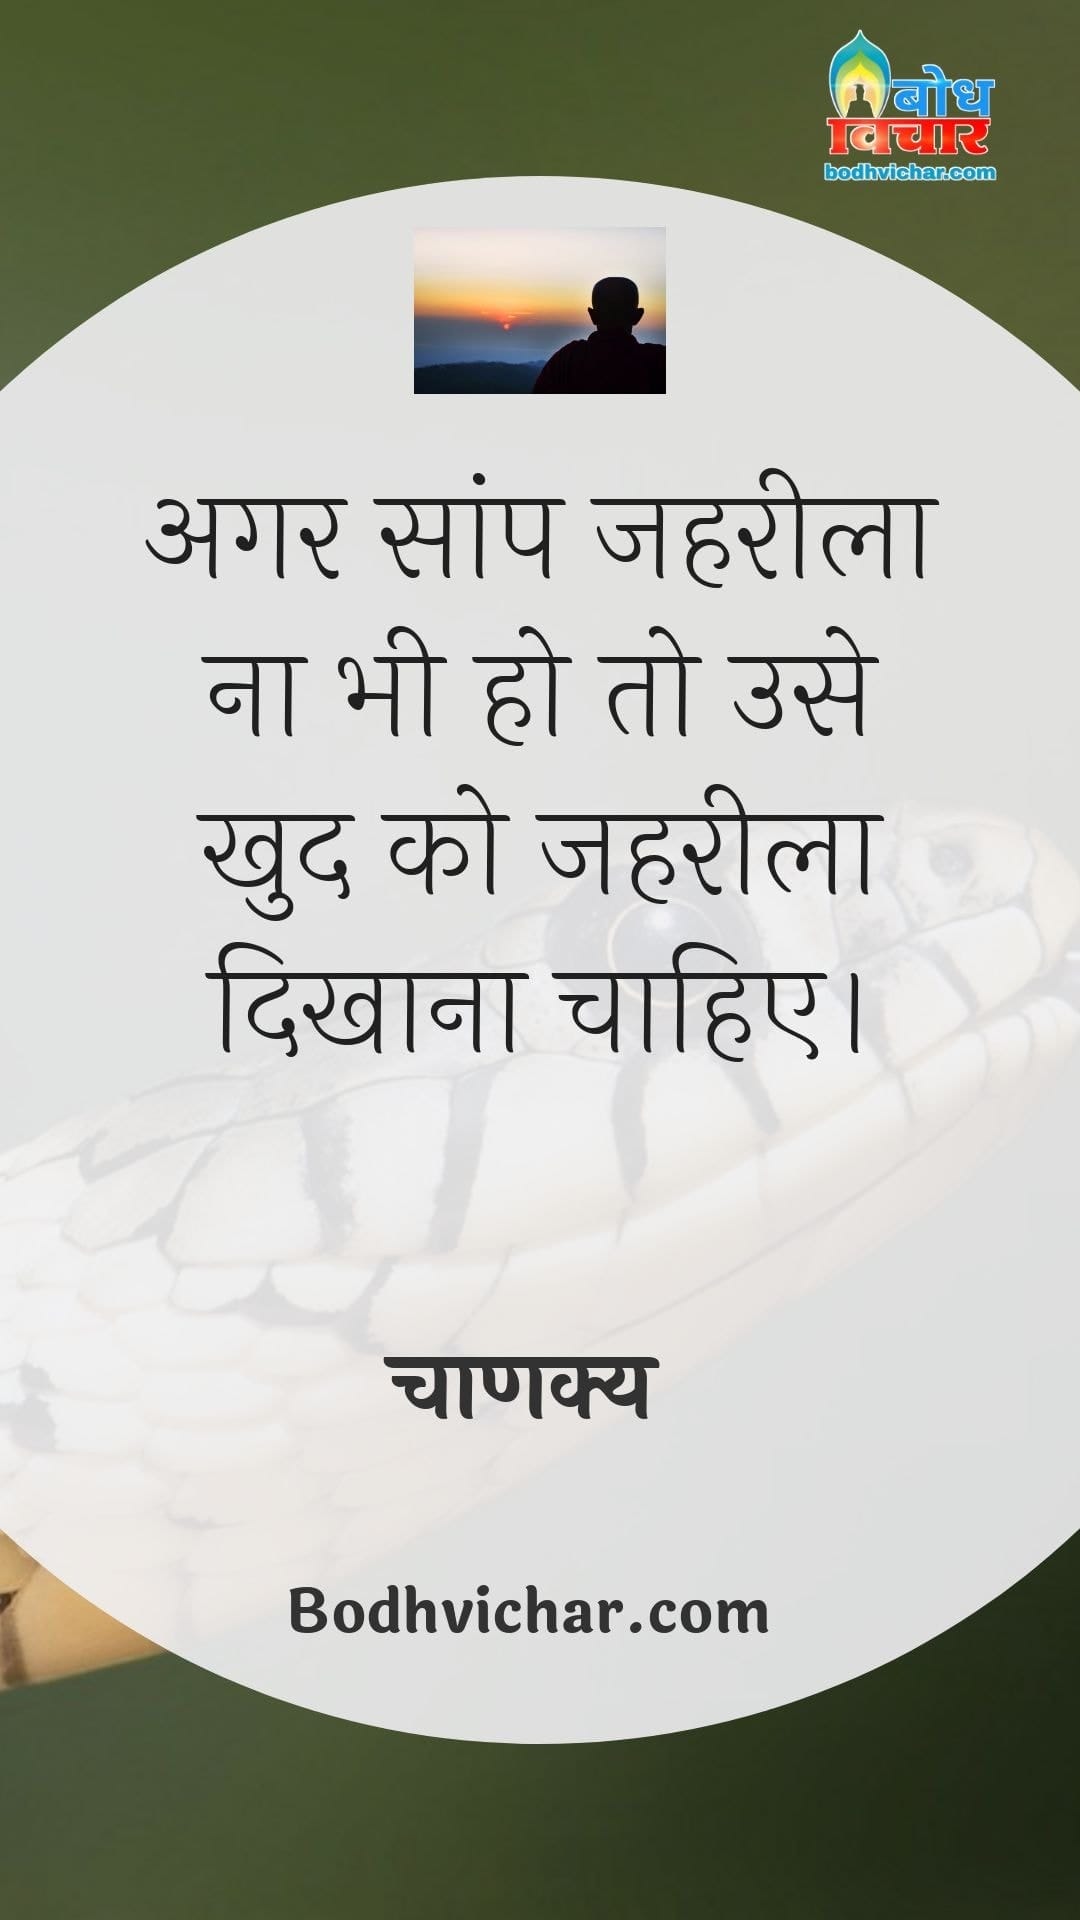 अगर सांप जहरीला ना भी हो तो उसे खुद को जहरीला दिखाना चाहिए। Bodh Vichar